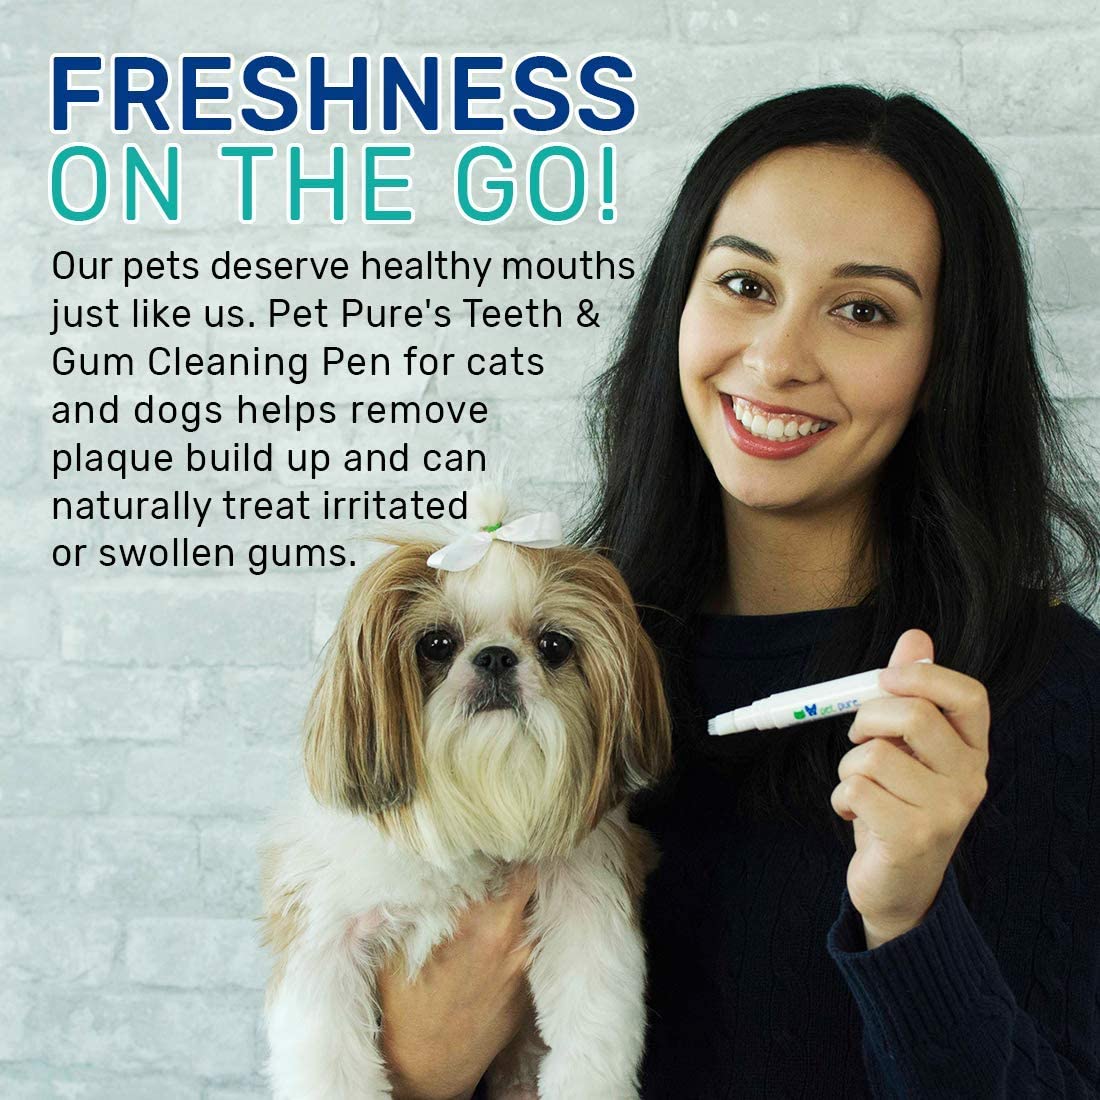  Dr. Brite Spray de Limpieza Oral Puro para Mascotas | Combate la acumulación de sarro | Refresca el Aliento del Animal doméstico | Ayuda a Reducir la Placa | Mejora la Salud de Las encías 